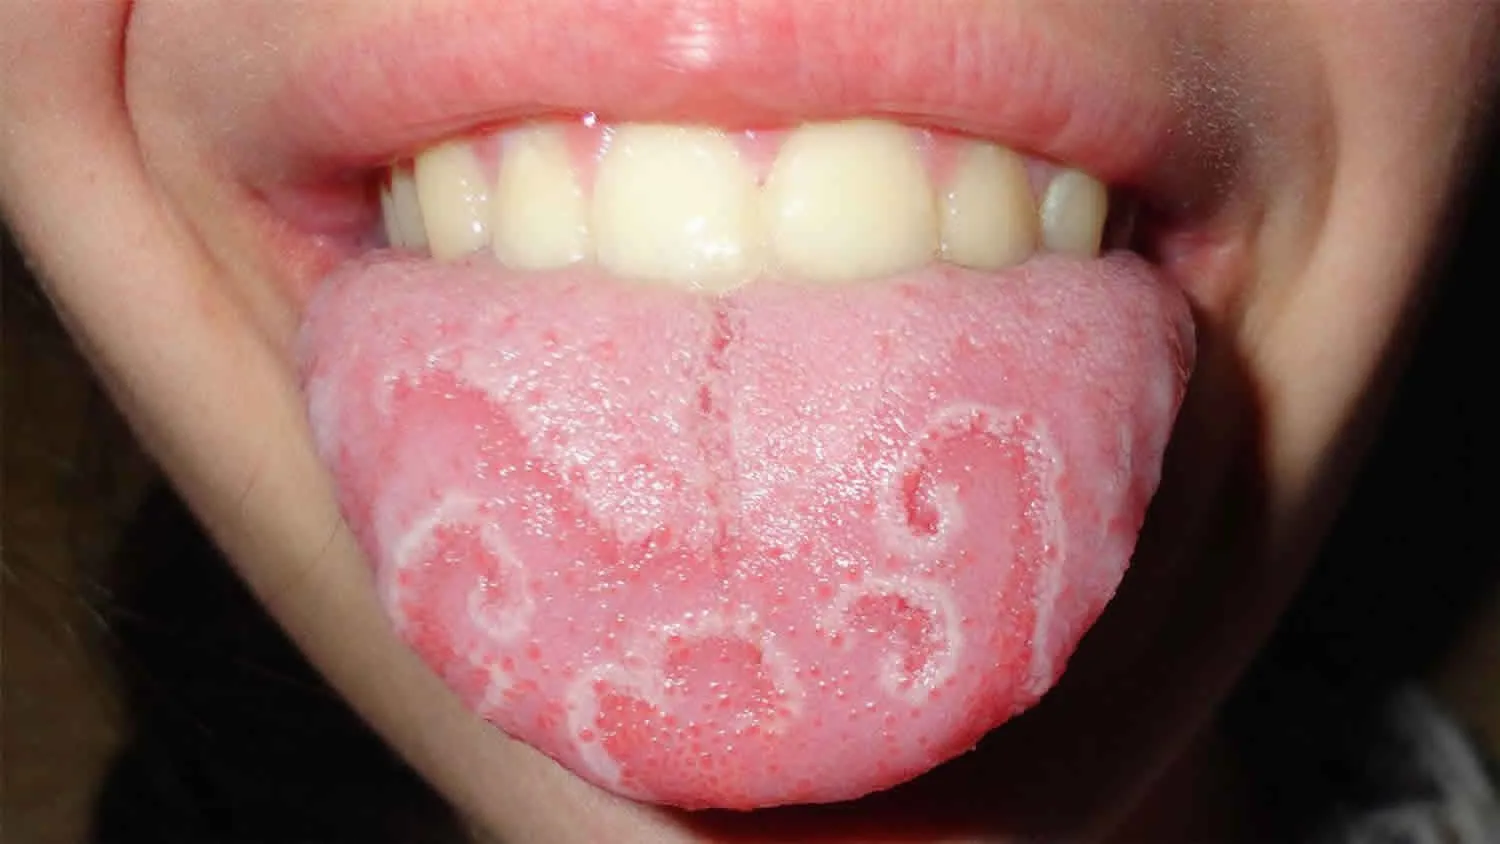 Viêm lưỡi là một bệnh lý nha khoa phổ biến gây hôi miệng cho bệnh nhân